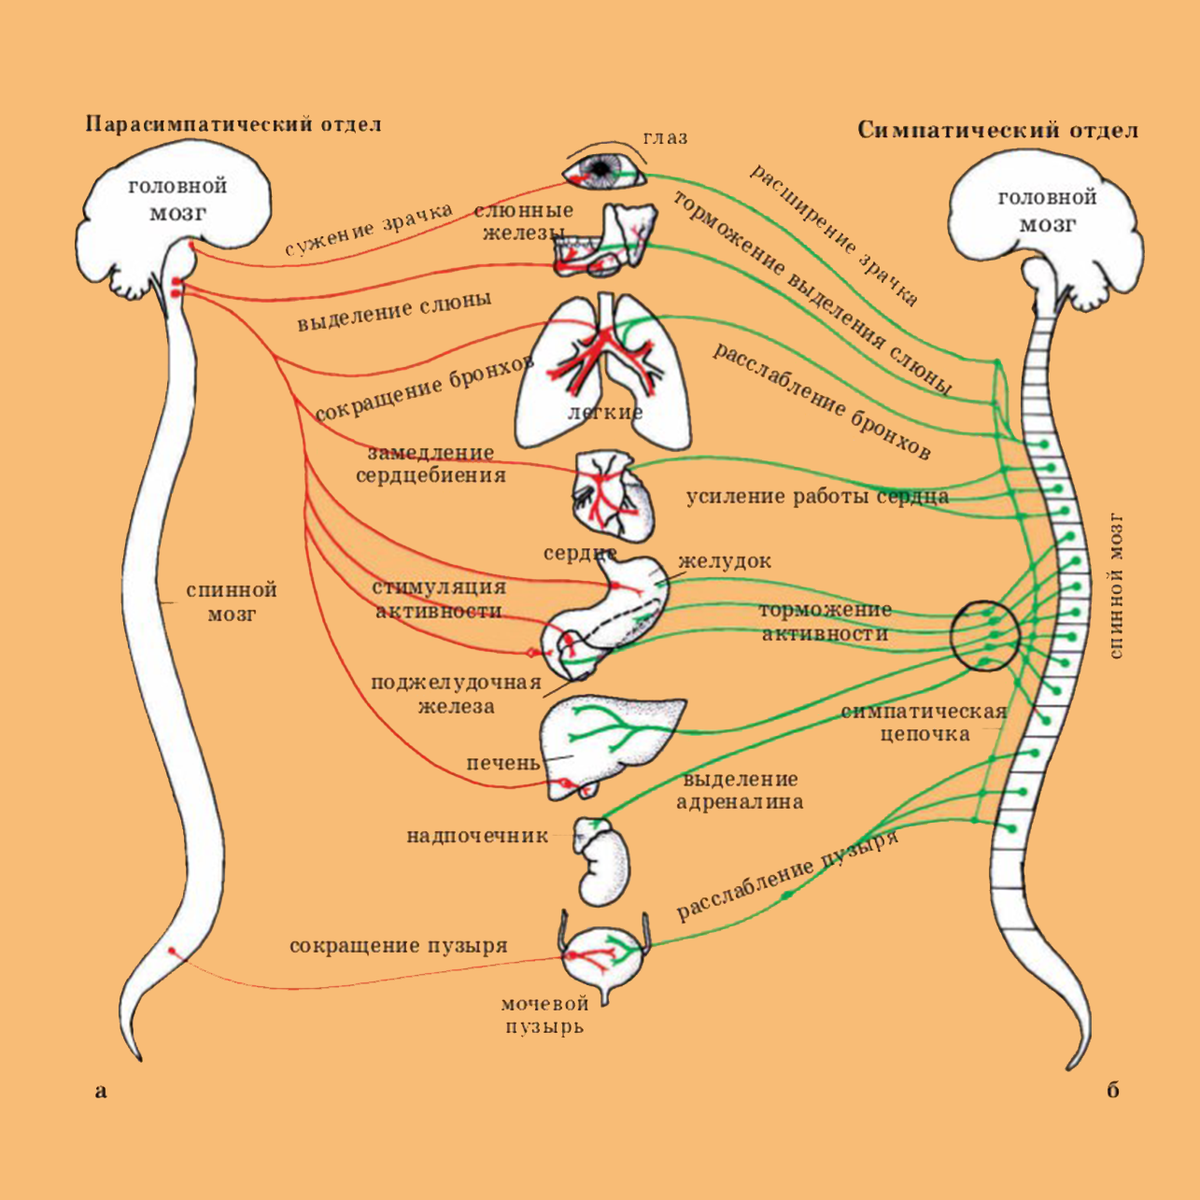 вегетативная нервная система фото